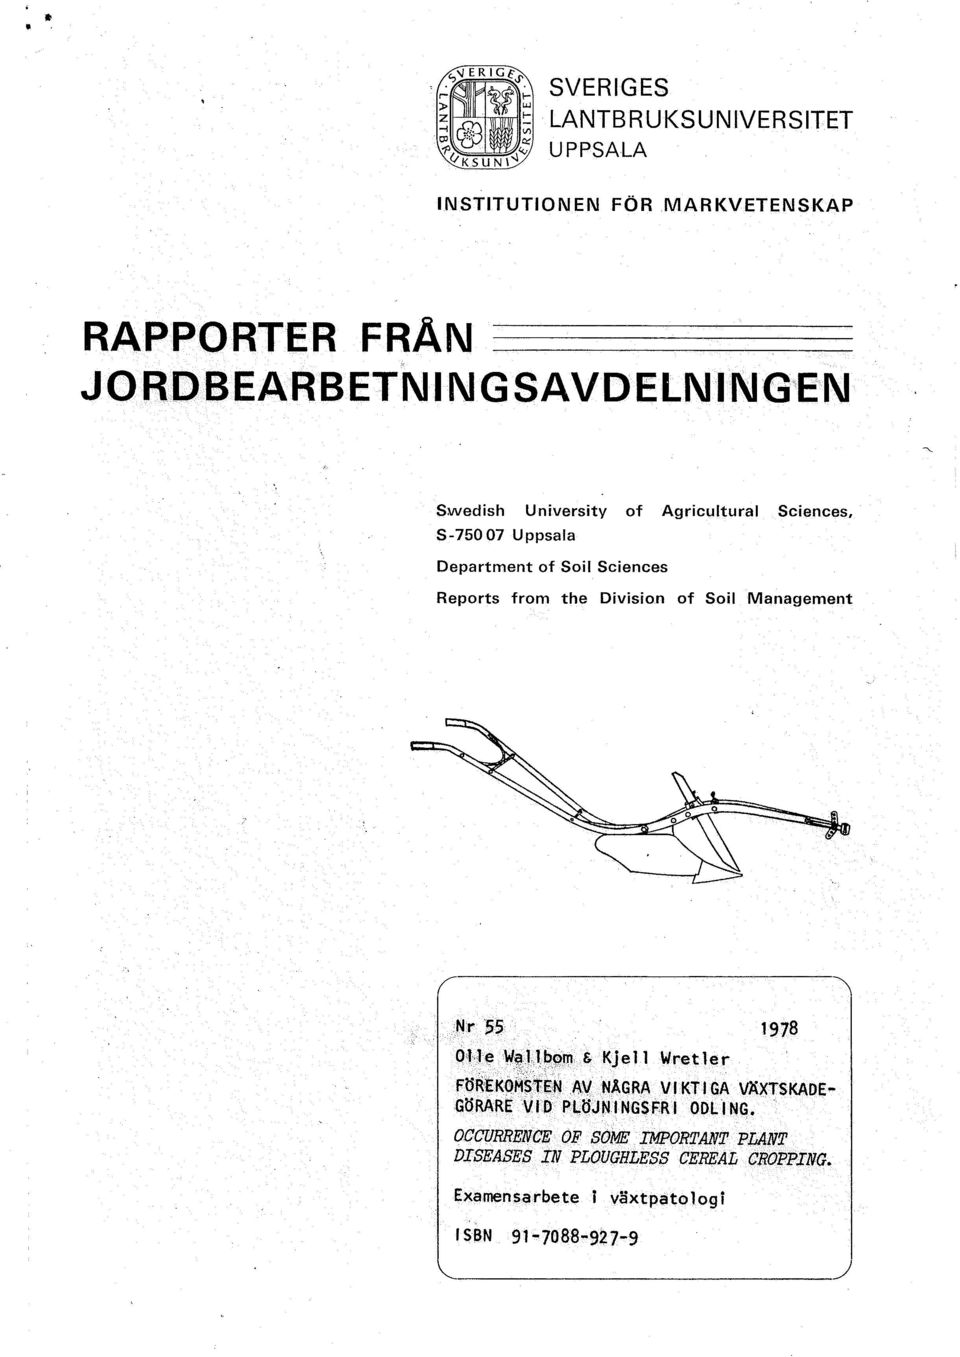 Management O'l'l!:!W~Jl,b~'Tl & Kjell Wretler 1978 FÖR'EKO~S1:EN lwnägra V f KT I GA VÄXTSKADE GöRARE vro PI,.